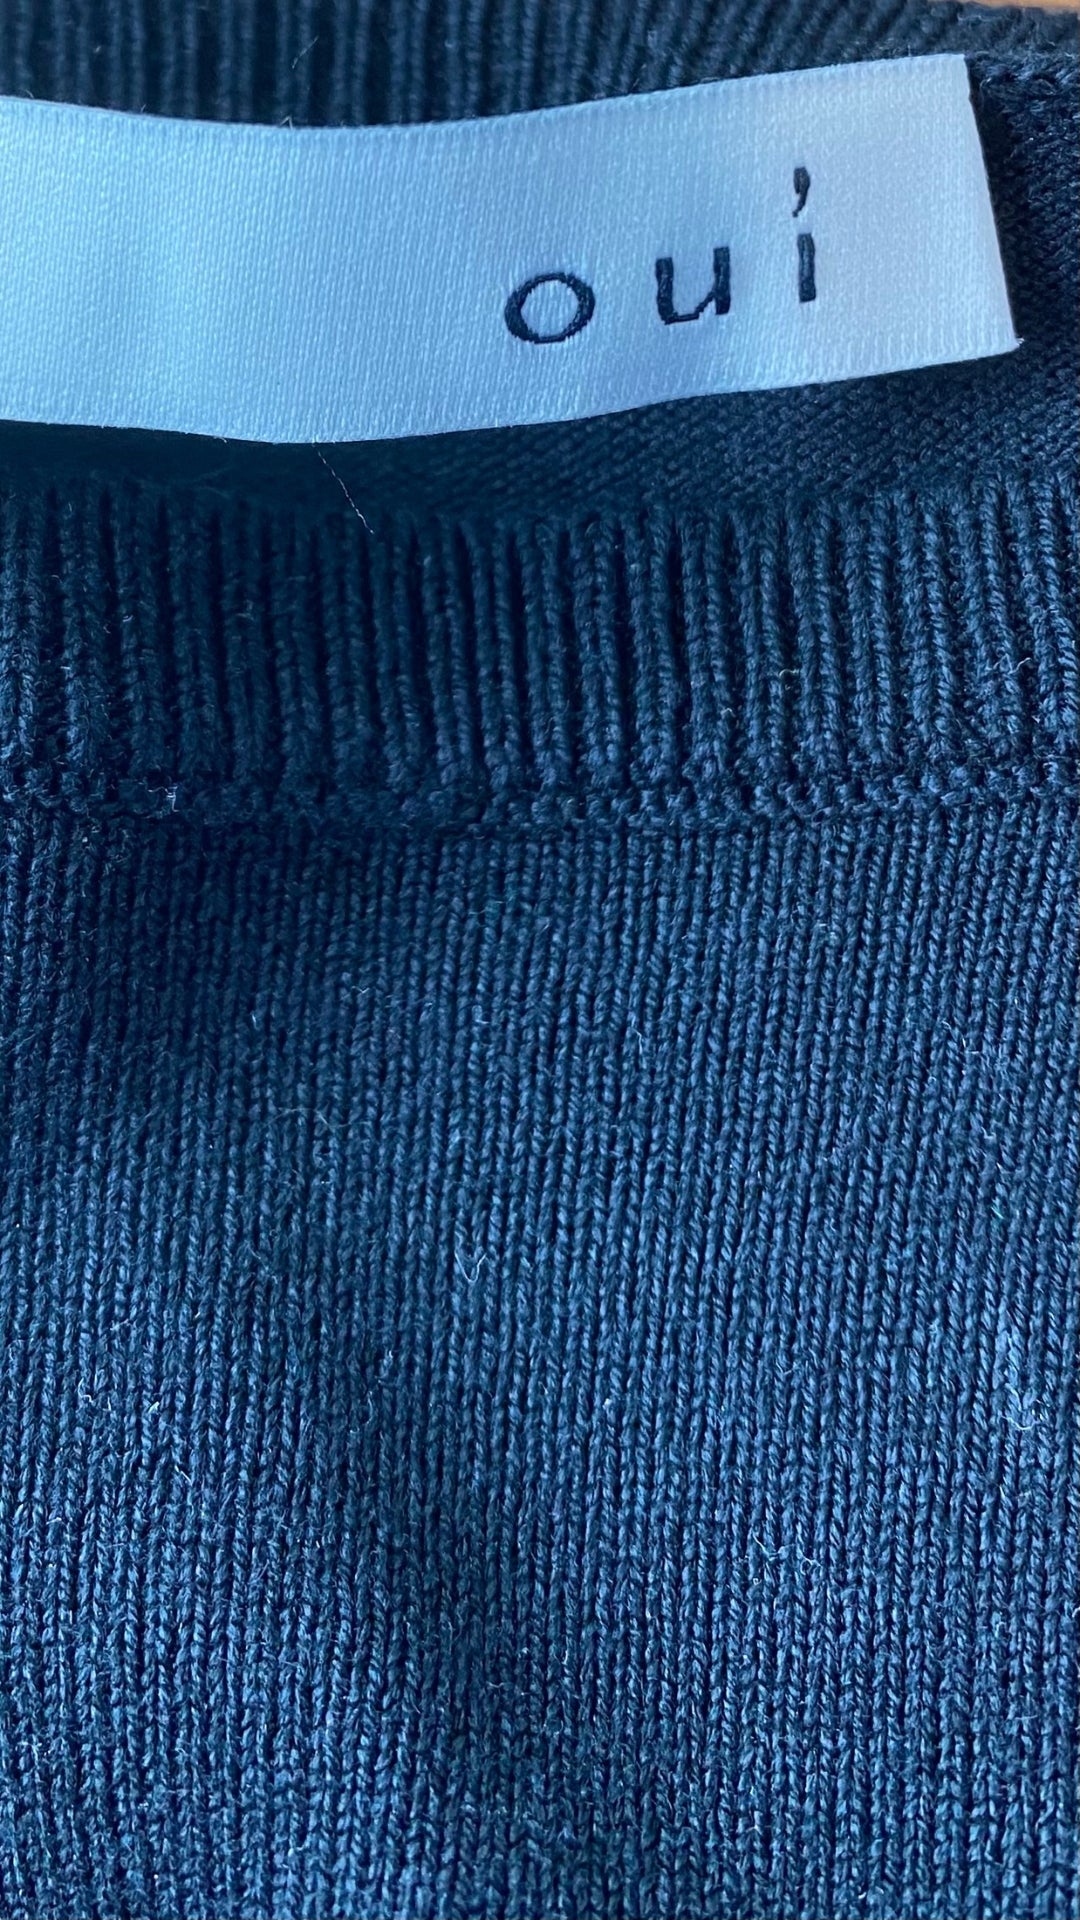 Chandail en tricot noir fin extensible Oui, taille 4 (xs/s). Vue de l'étiquette de marque.